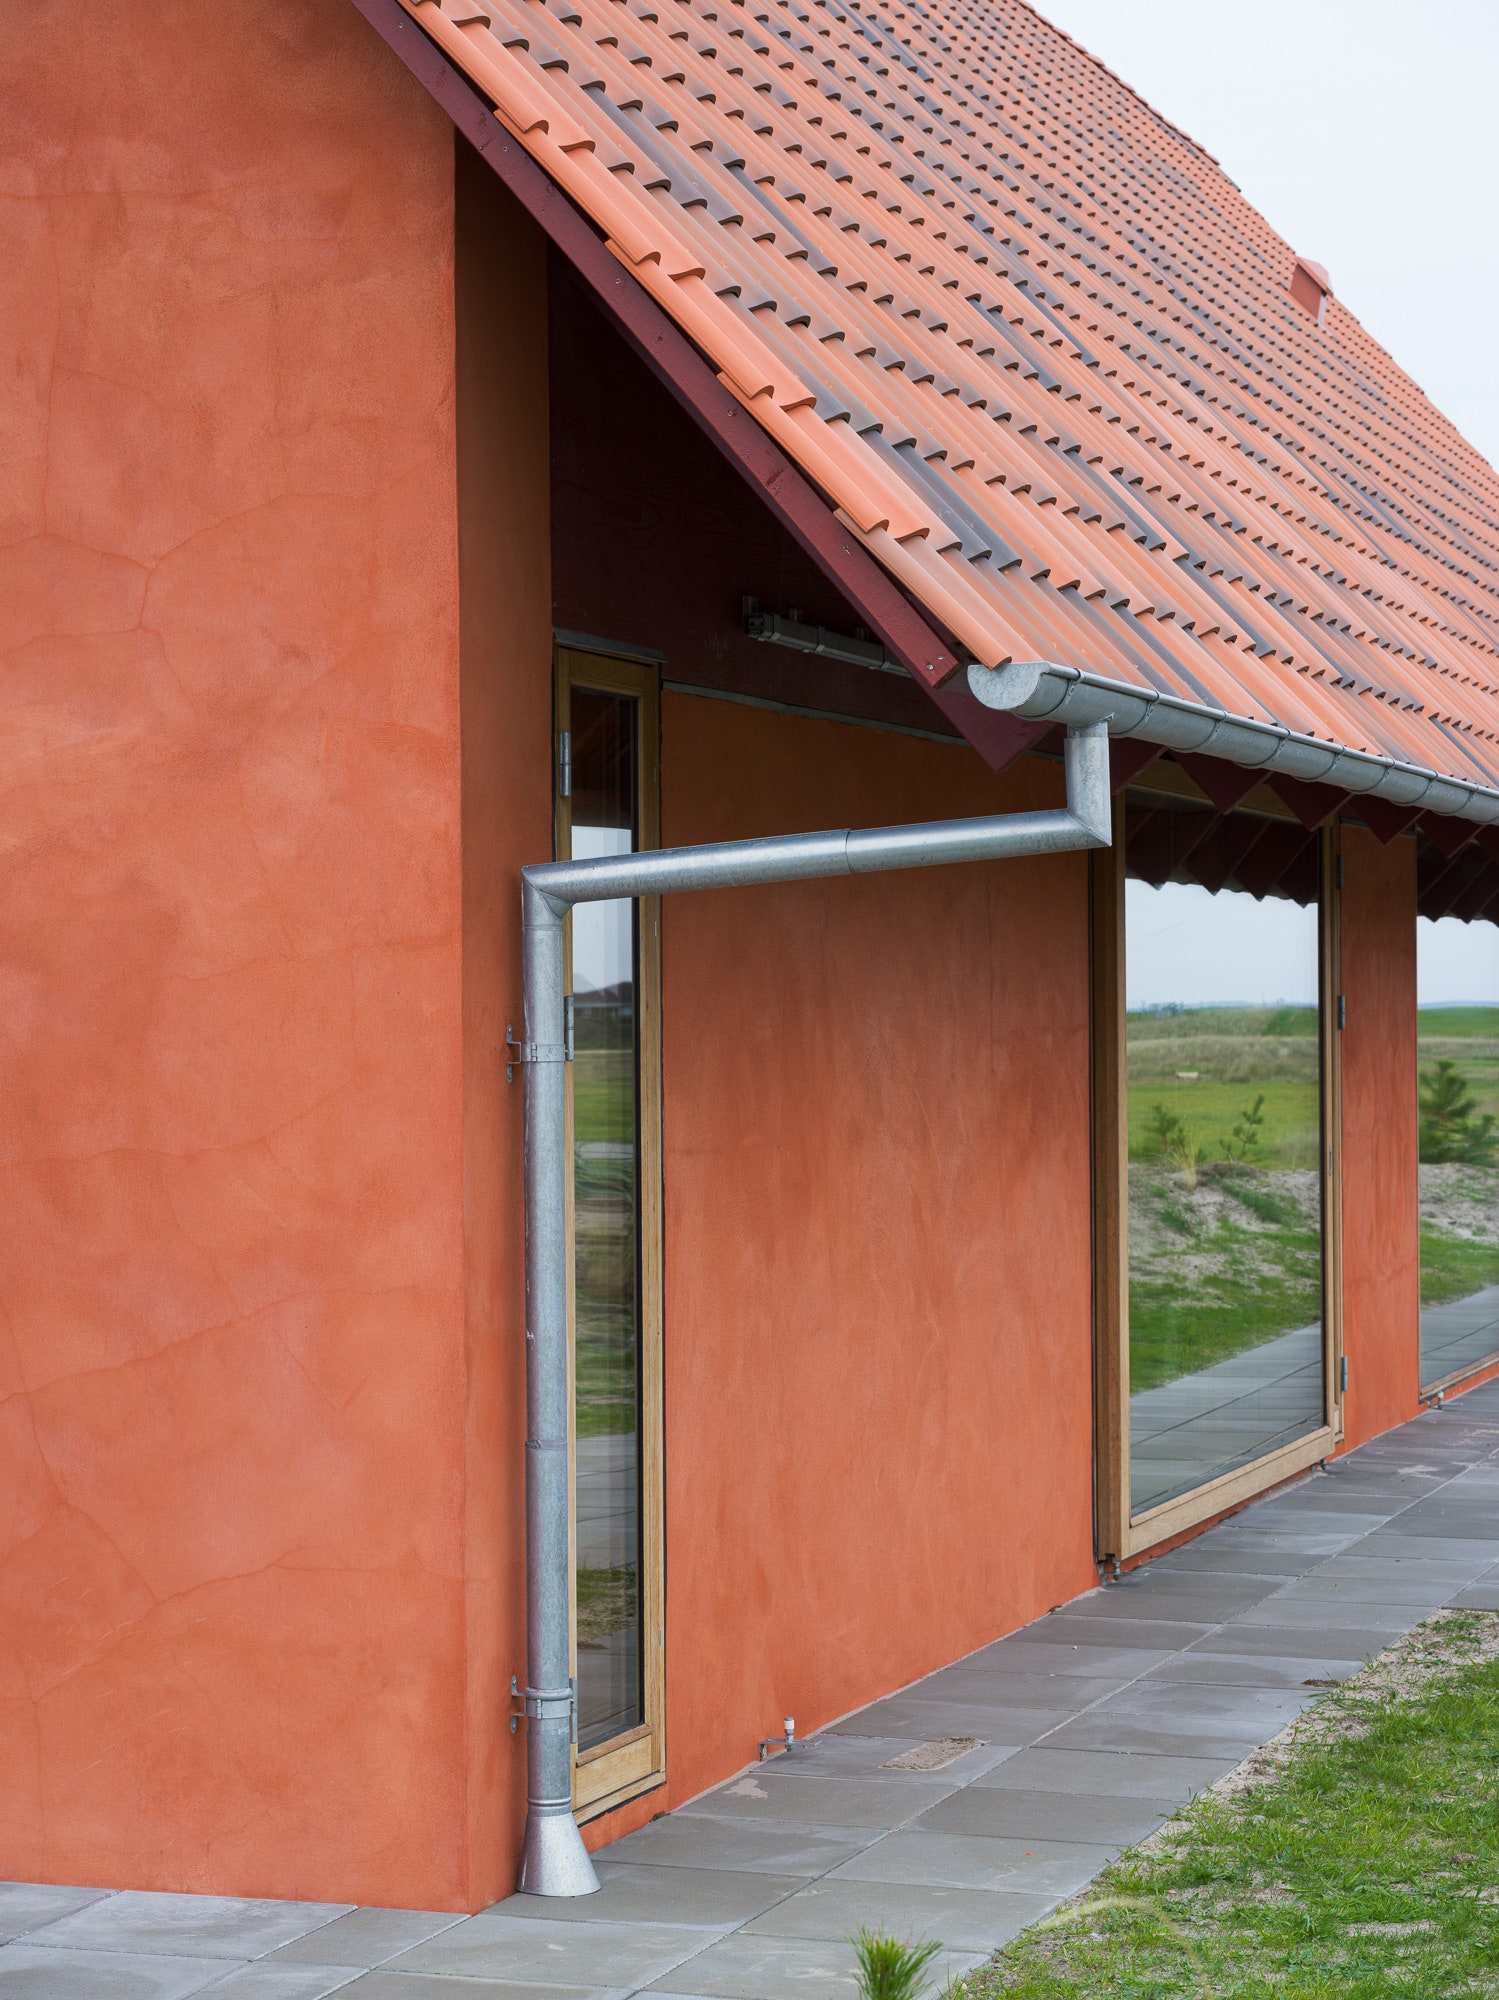 Терракотовый дом на датском острове Фанё